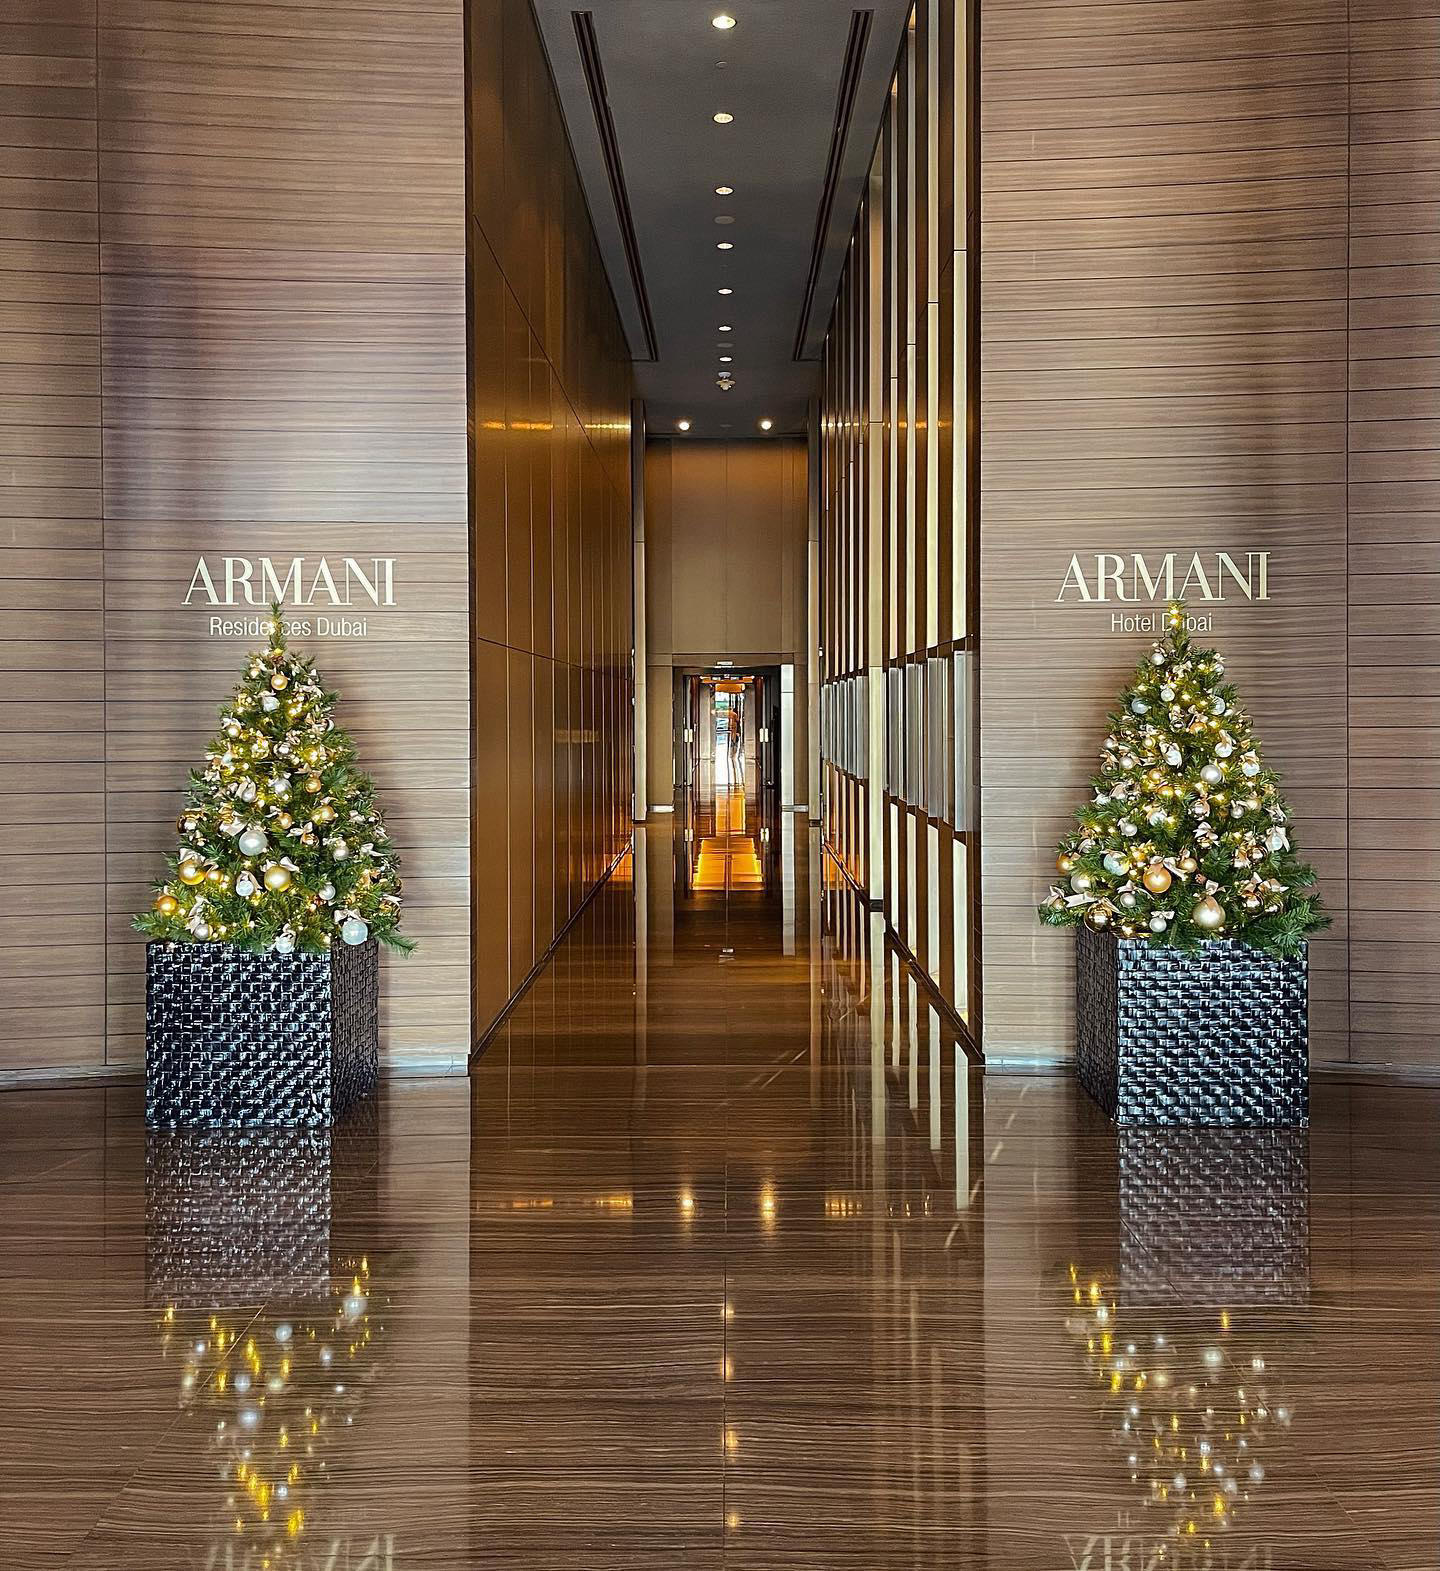 image  1 Armani Hotel Dubai - Christmas has arrived in the Armani Hotel